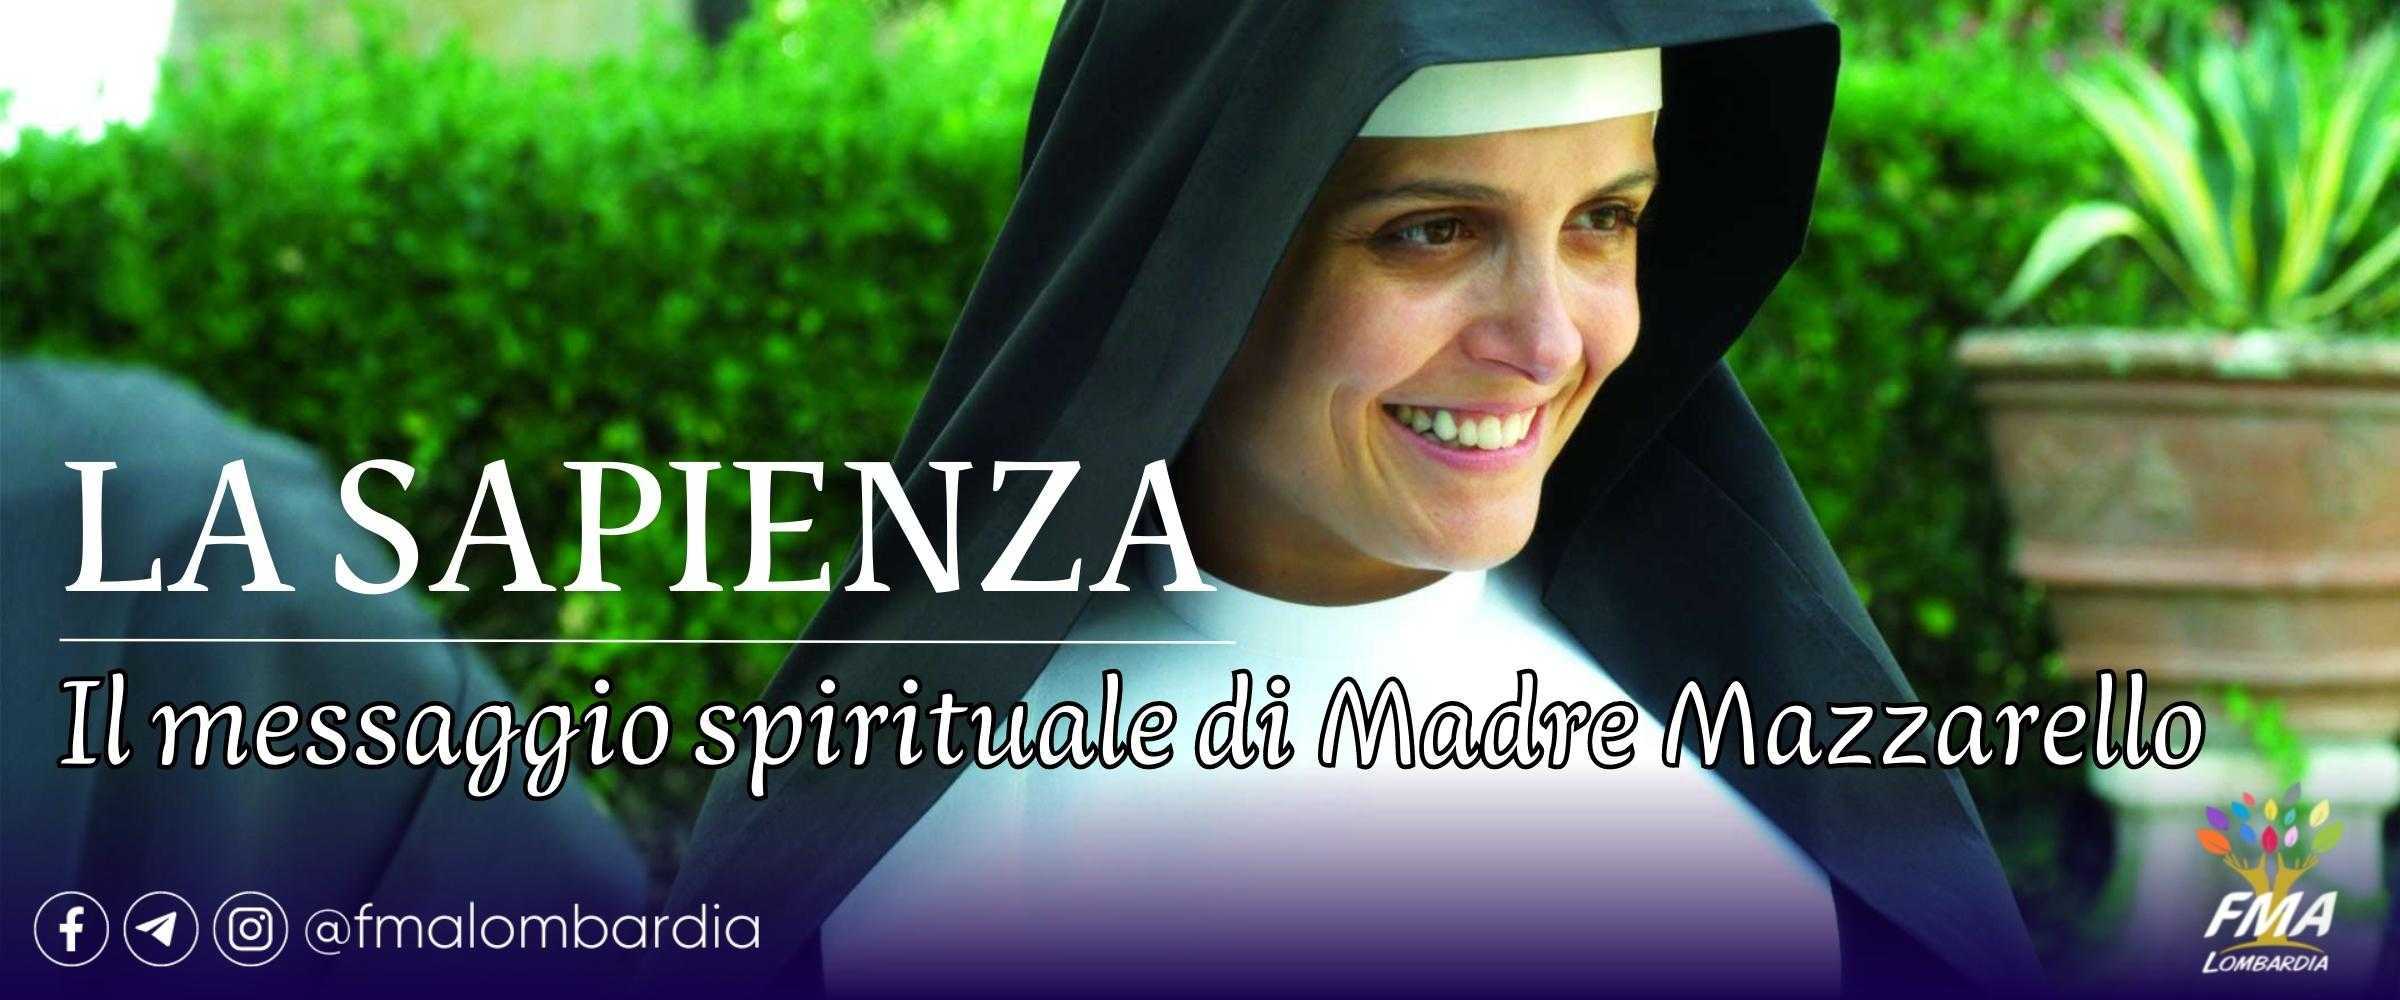 La sapienza: il messaggio spirituale di Madre Mazzarello